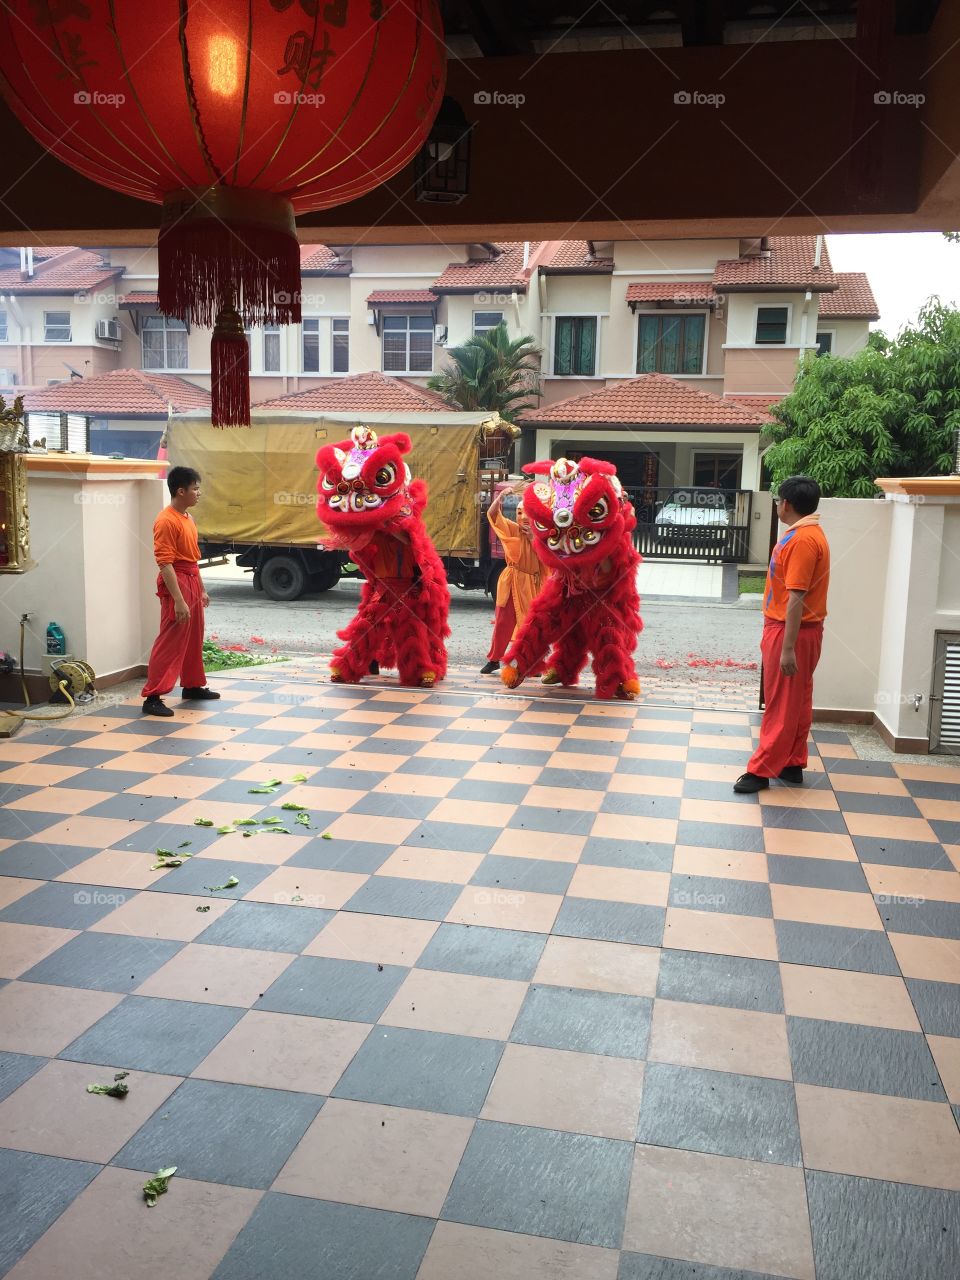 Lion Dance 